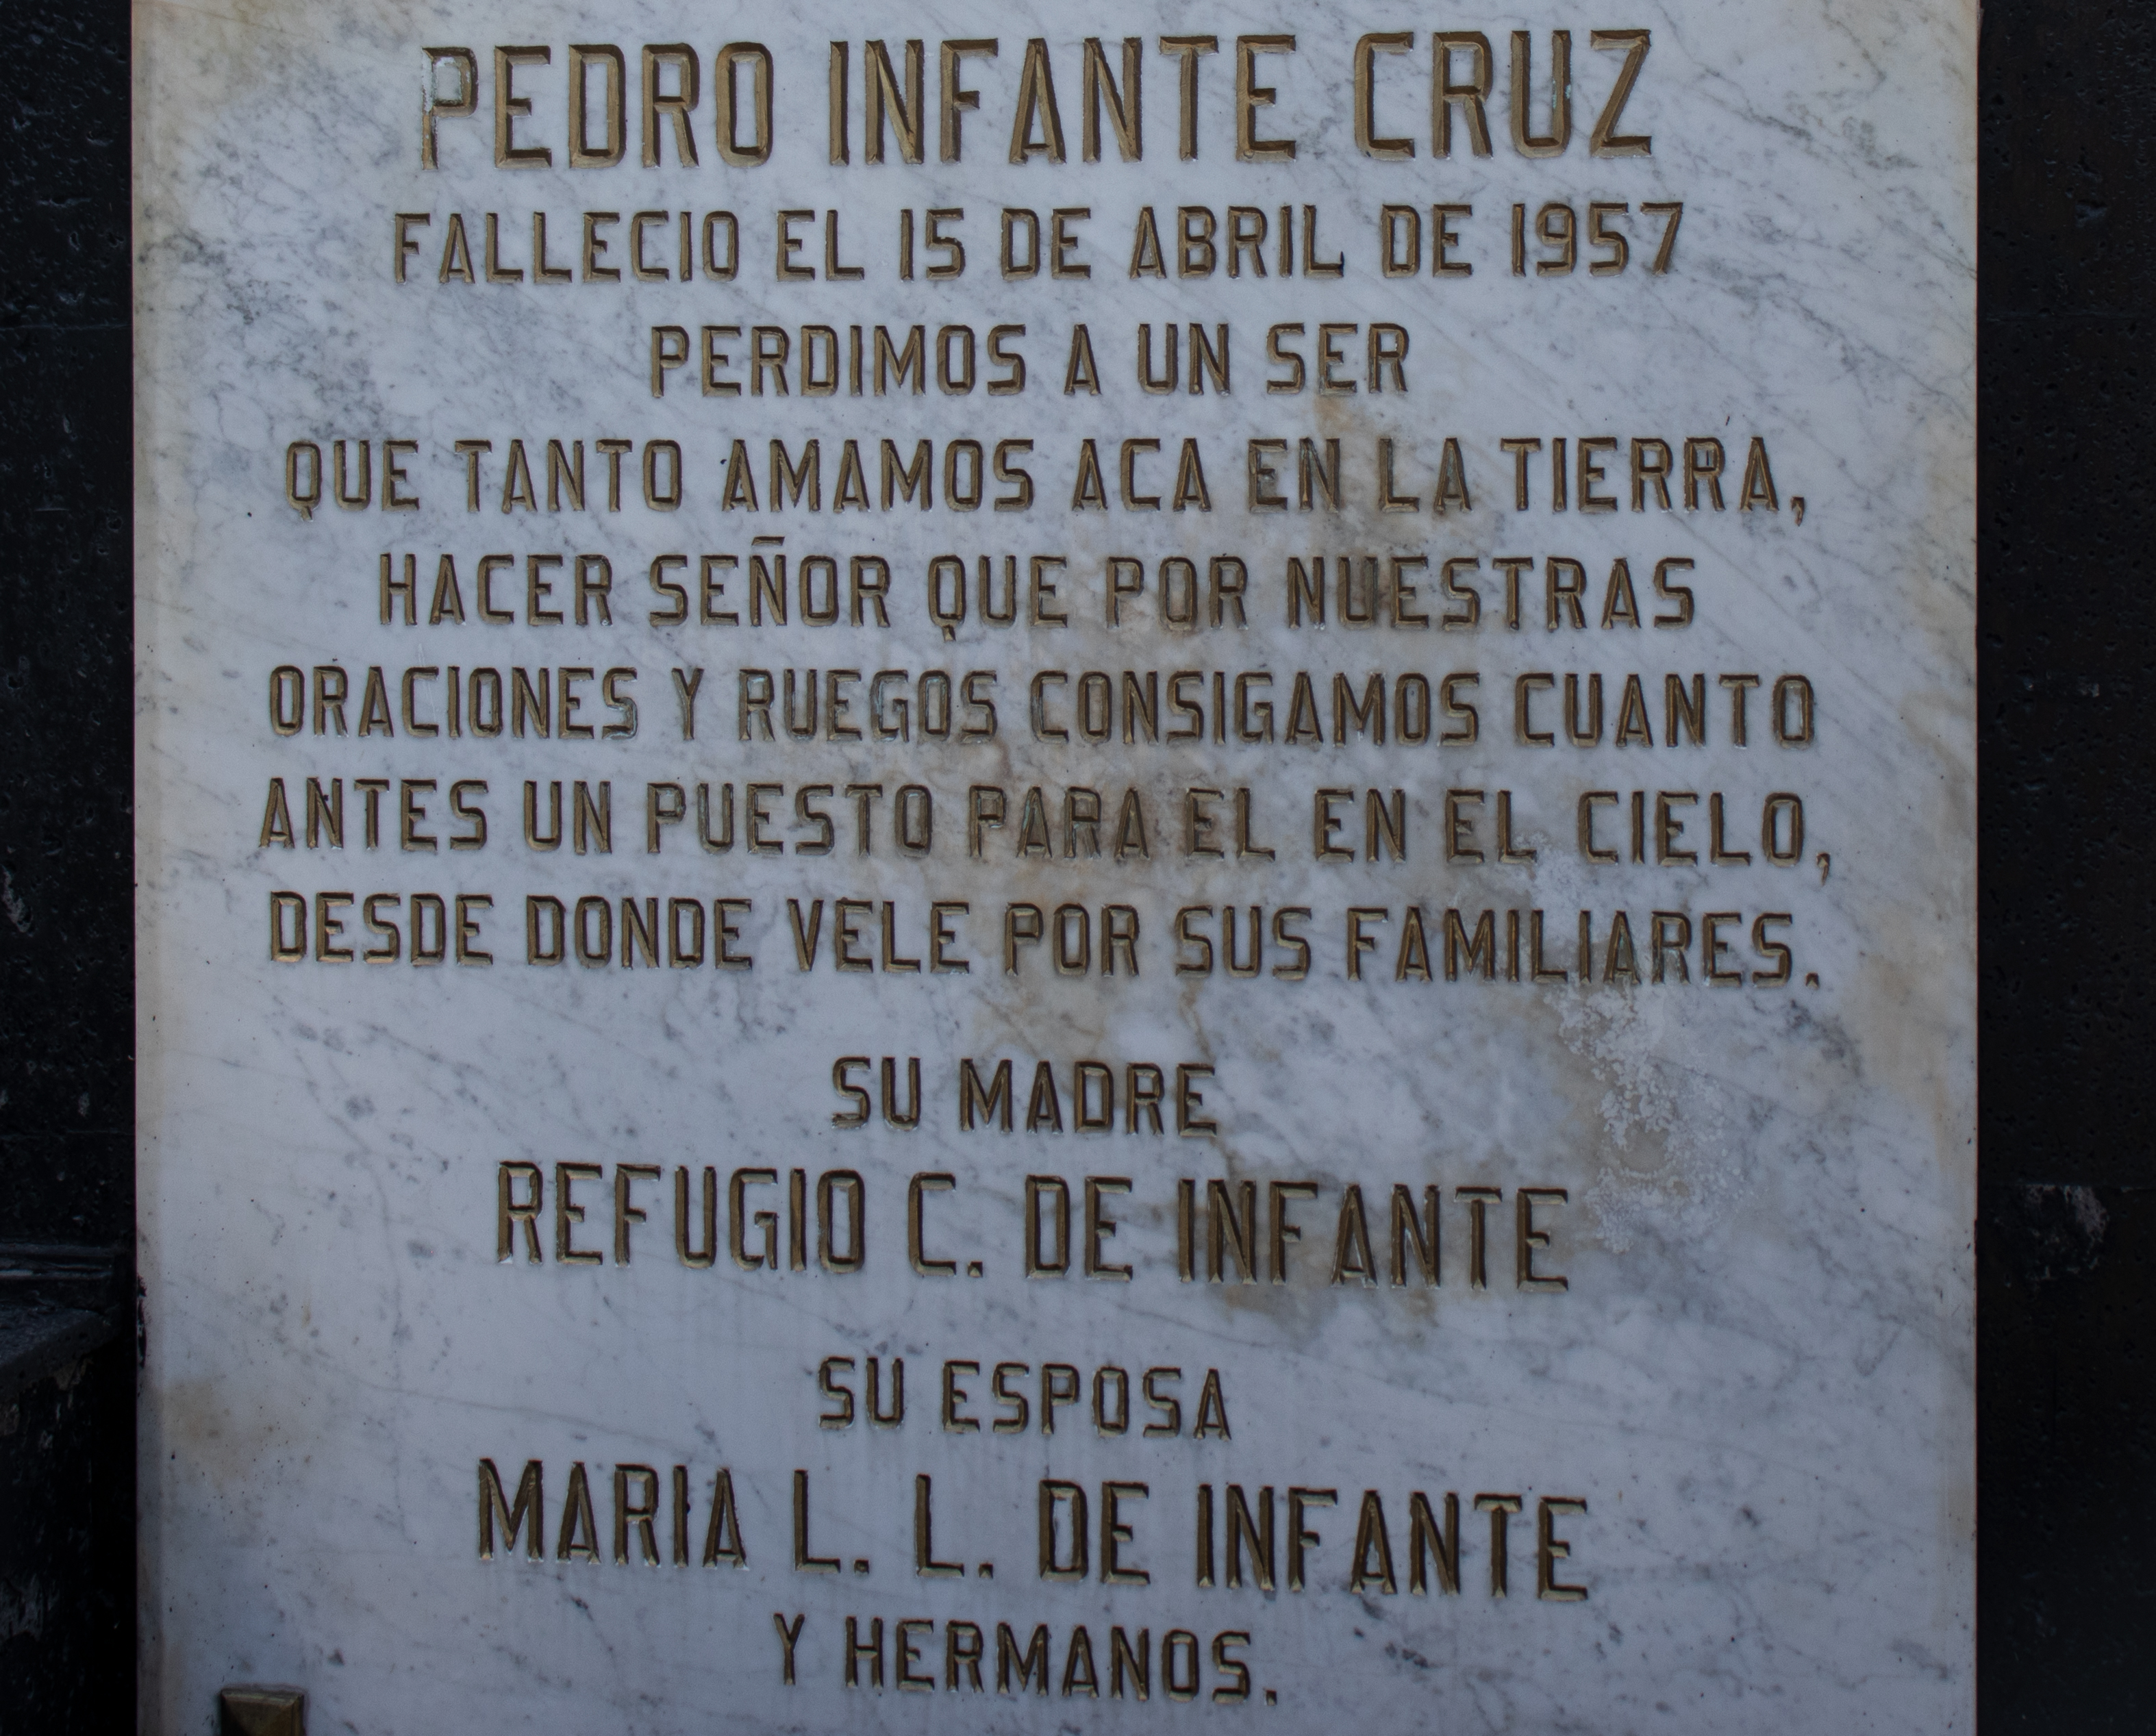 La tumba de Pedro Infante luce de color negro con recuadros de mármol, los cuales, les fueron escritas las dedicatorias de amigos, familiares y seguidores. 

Foto: Mau HL / Infobae